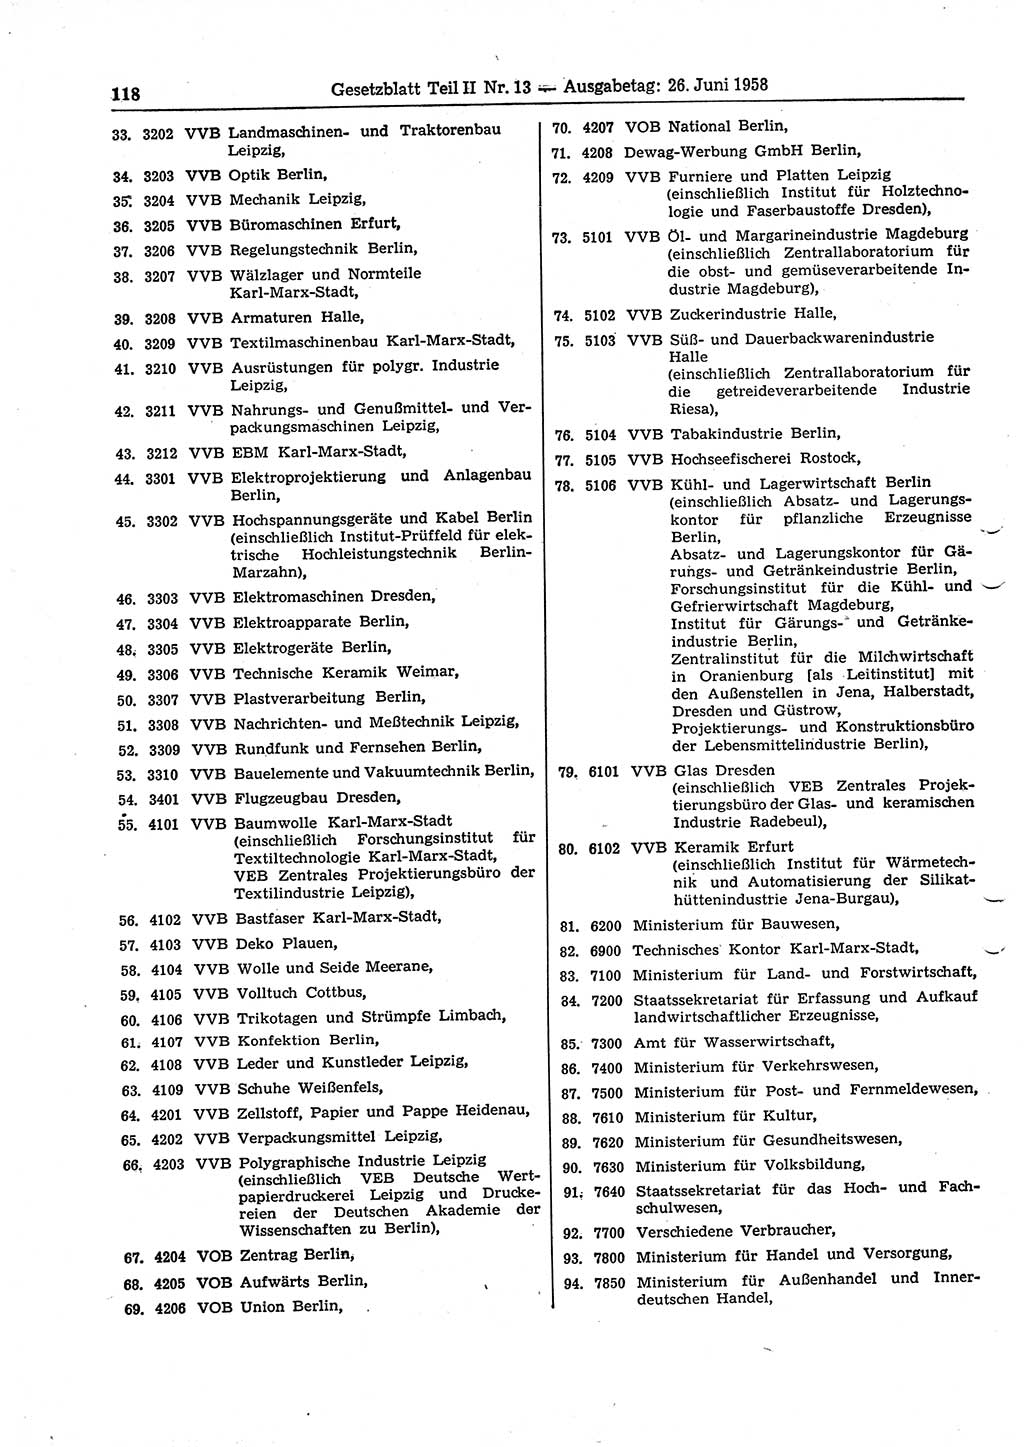 Gesetzblatt (GBl.) der Deutschen Demokratischen Republik (DDR) Teil ⅠⅠ 1958, Seite 118 (GBl. DDR ⅠⅠ 1958, S. 118)